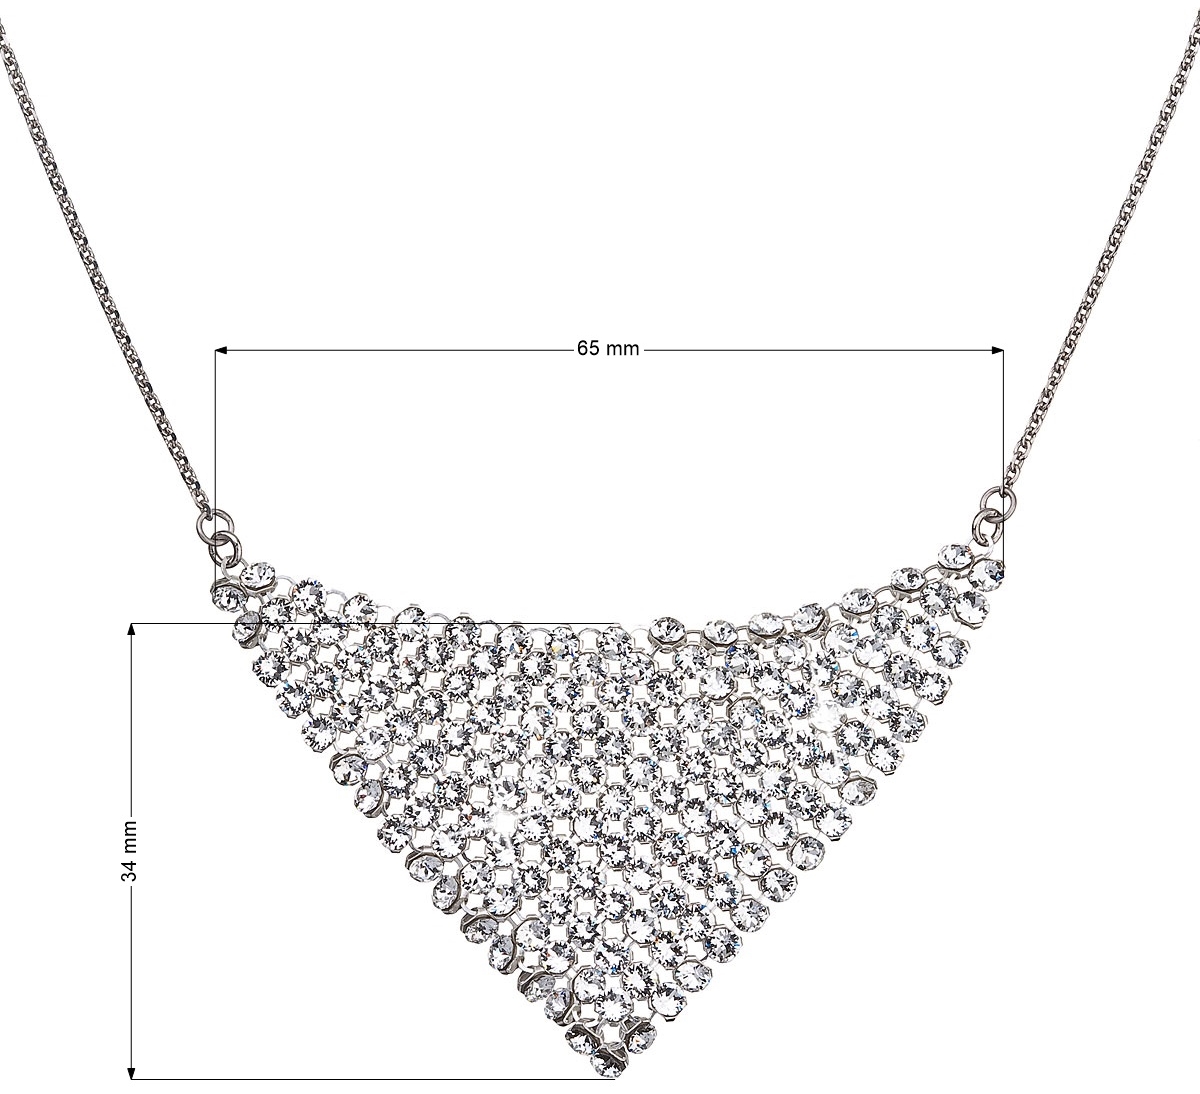 Strieborný náhrdelník s krištáľmi Swarovski biely 32019.1